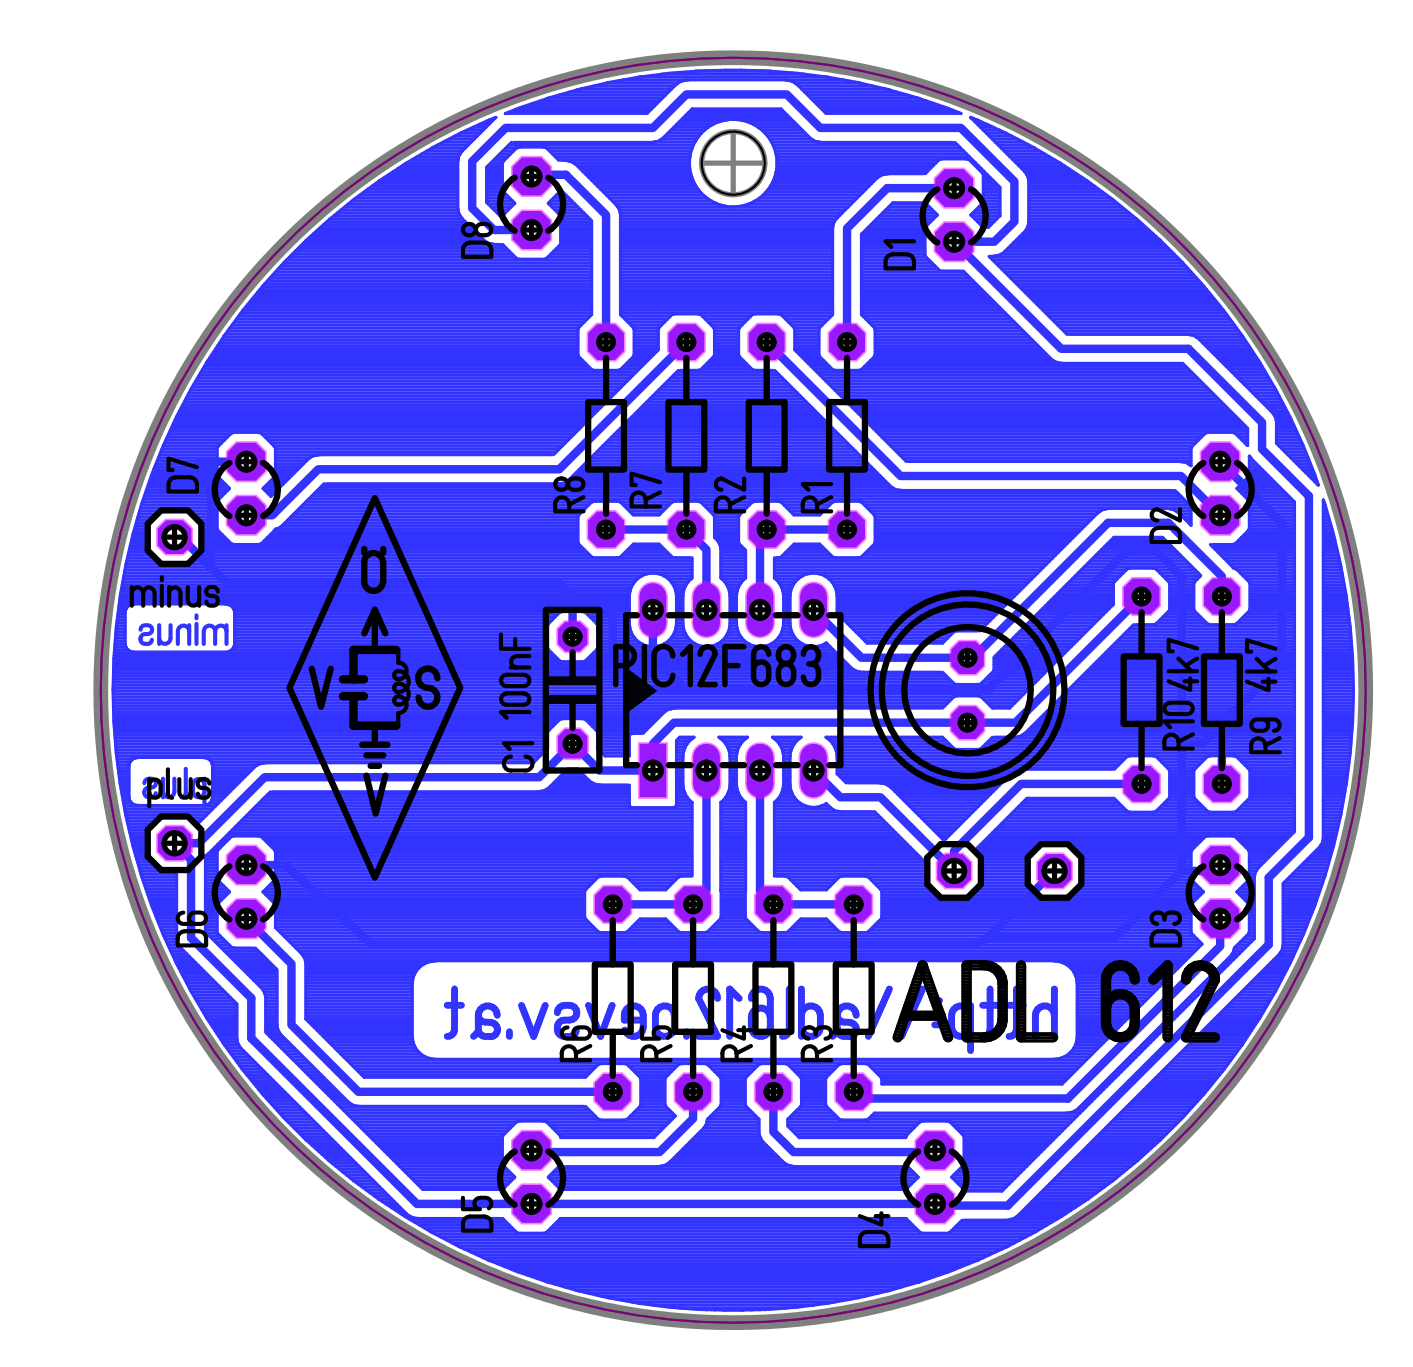 Schaltplan Den Kern der Schaltung (Abb. 1) bildet der bereits programmierte Mikrocontroller PIC12F683. Dieser wird von 2 AAA Batterien mit etwa 3V an VDD(+) und VSS(-) versorgt.